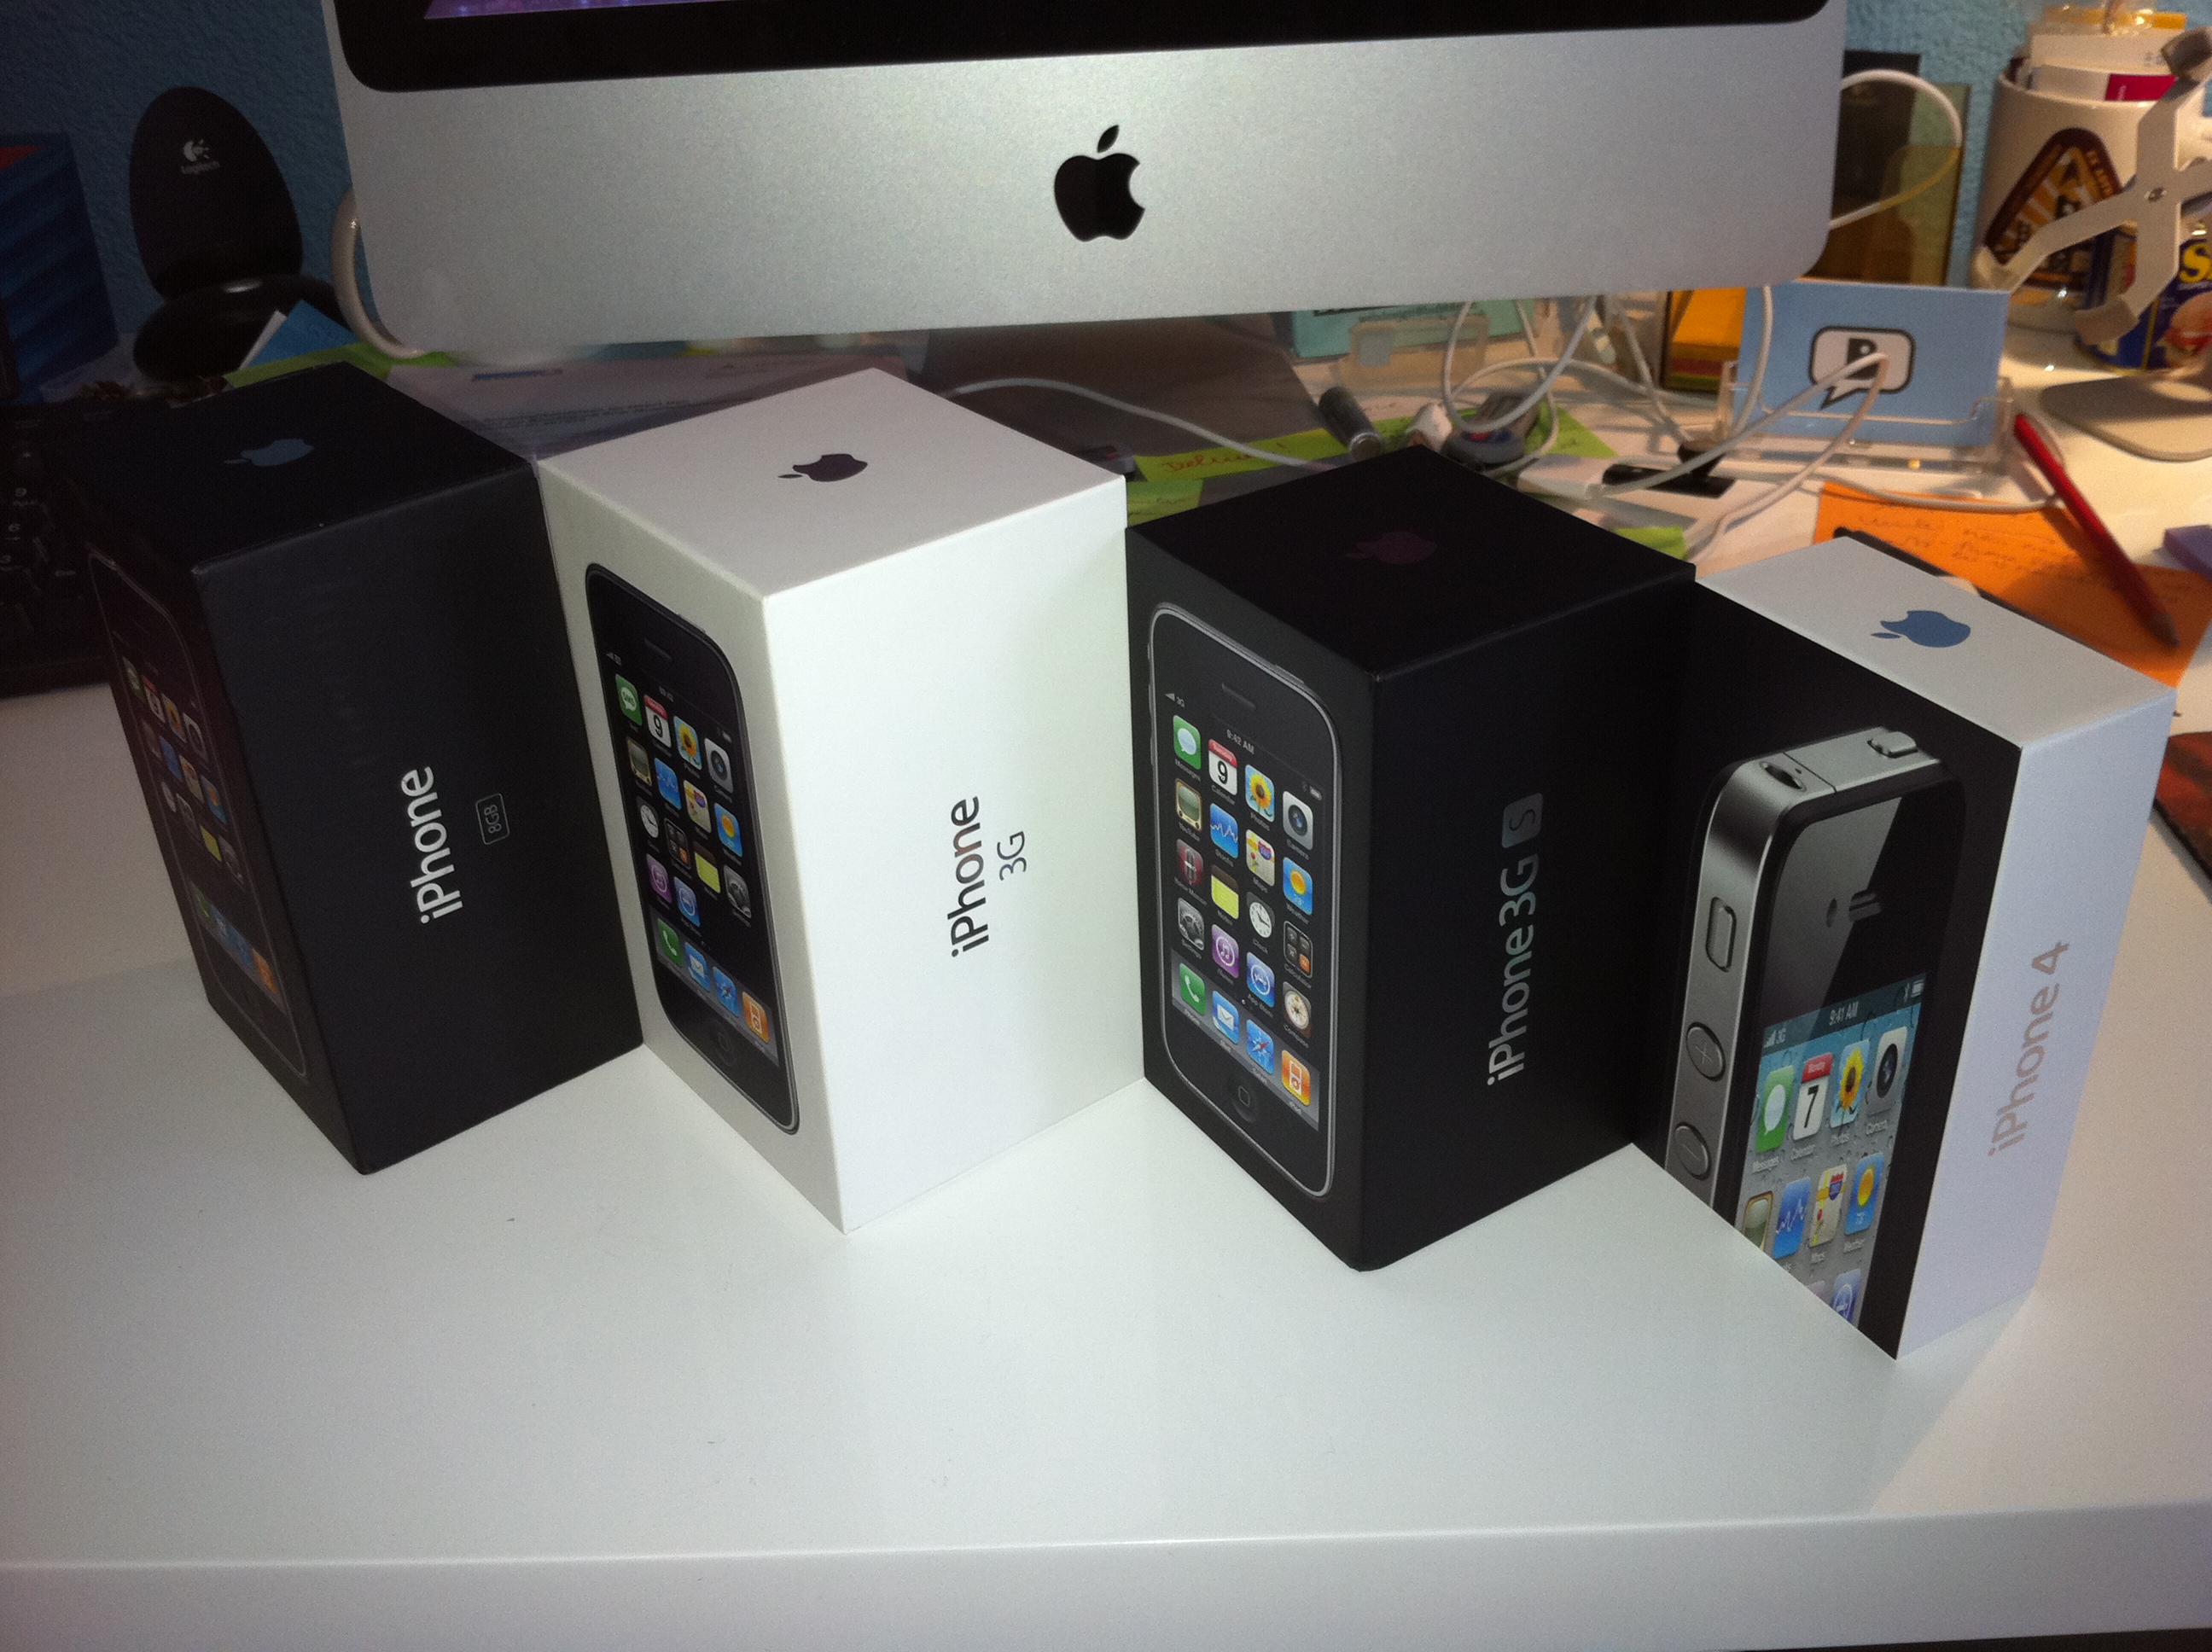 Die Evolution der iPhone-Schachteln: 1, 3G, 3GS, 4 (v.l.n.r.)